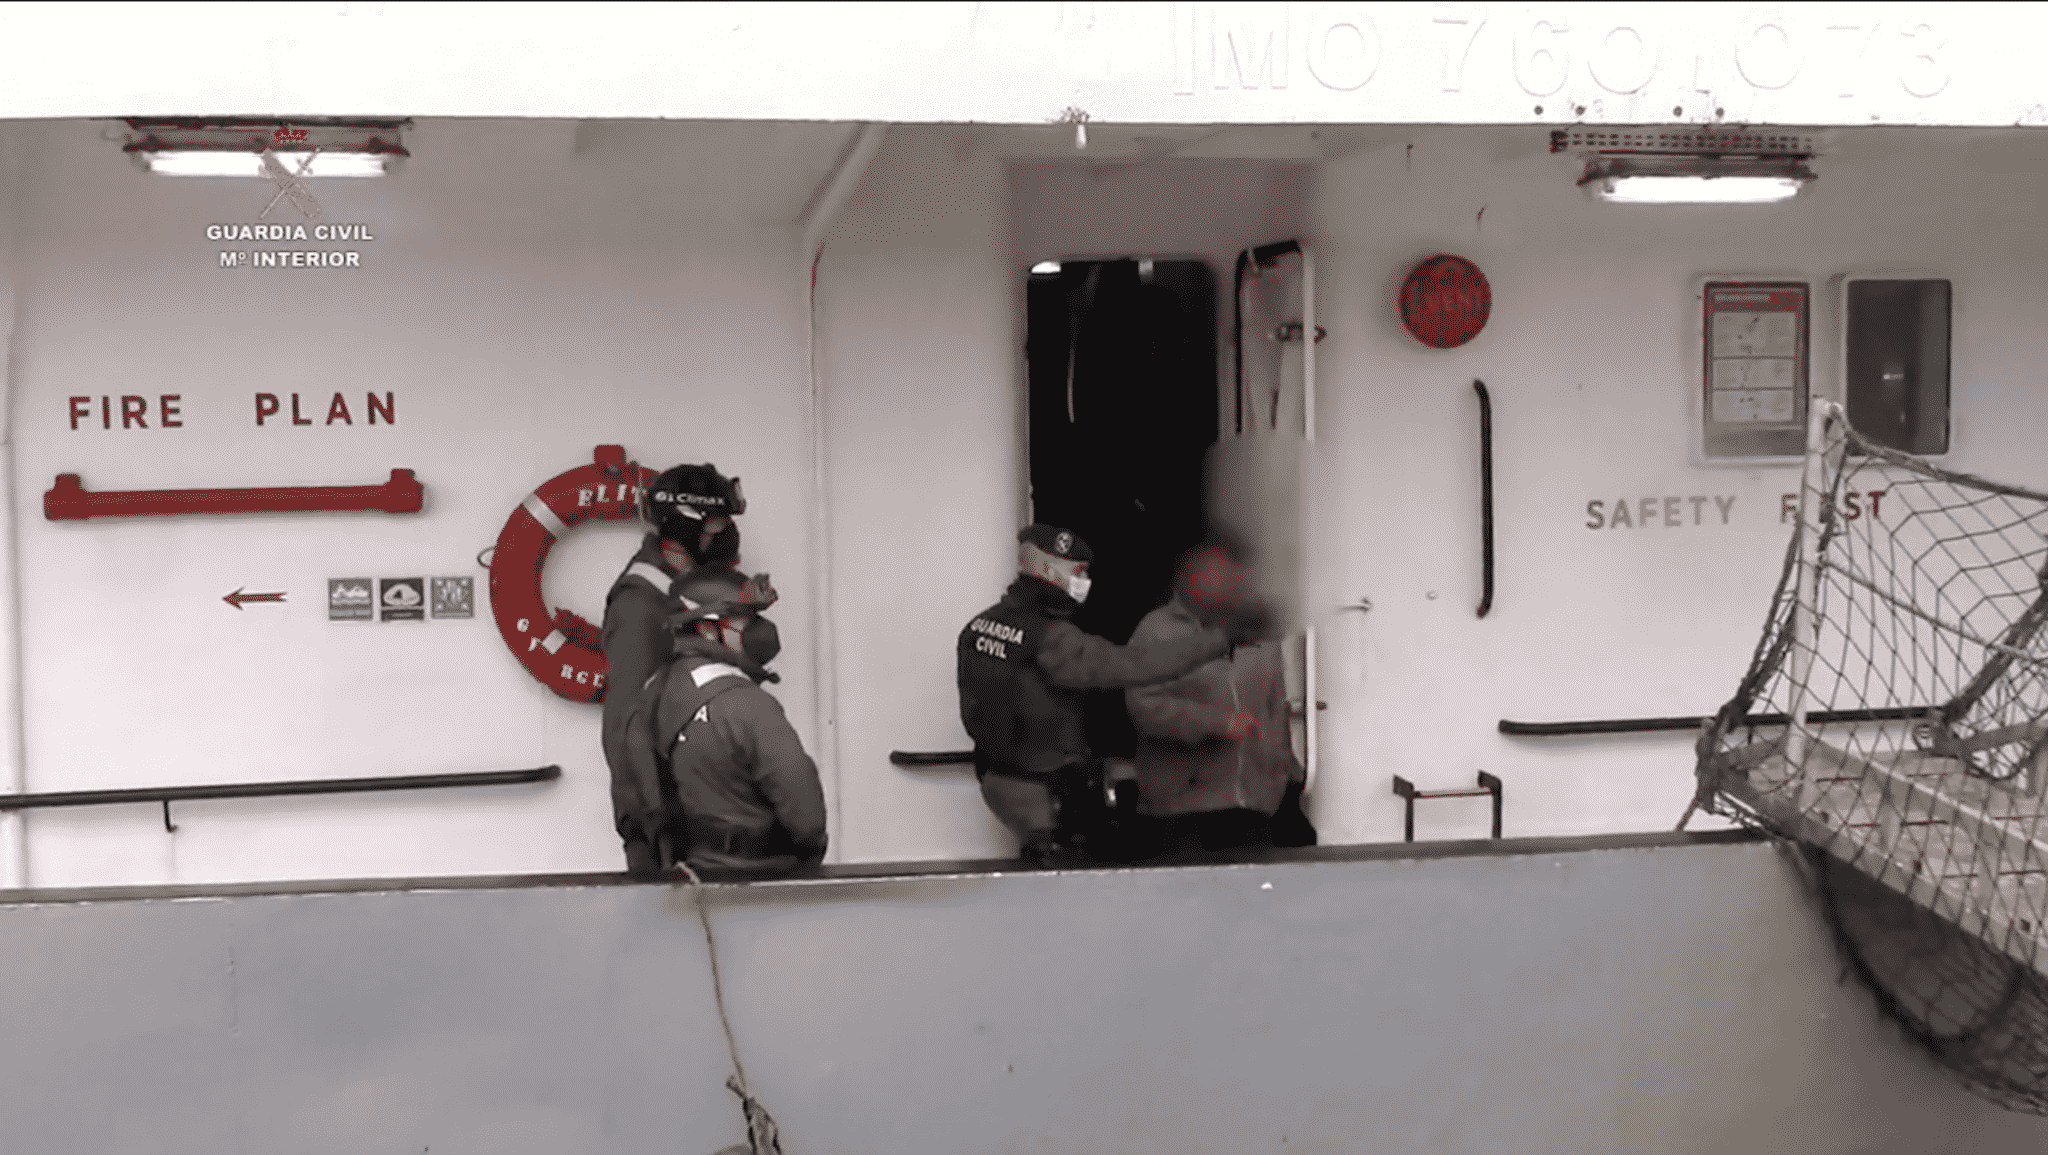 La Guardia Civil deteniendo a los migrantes en el buque